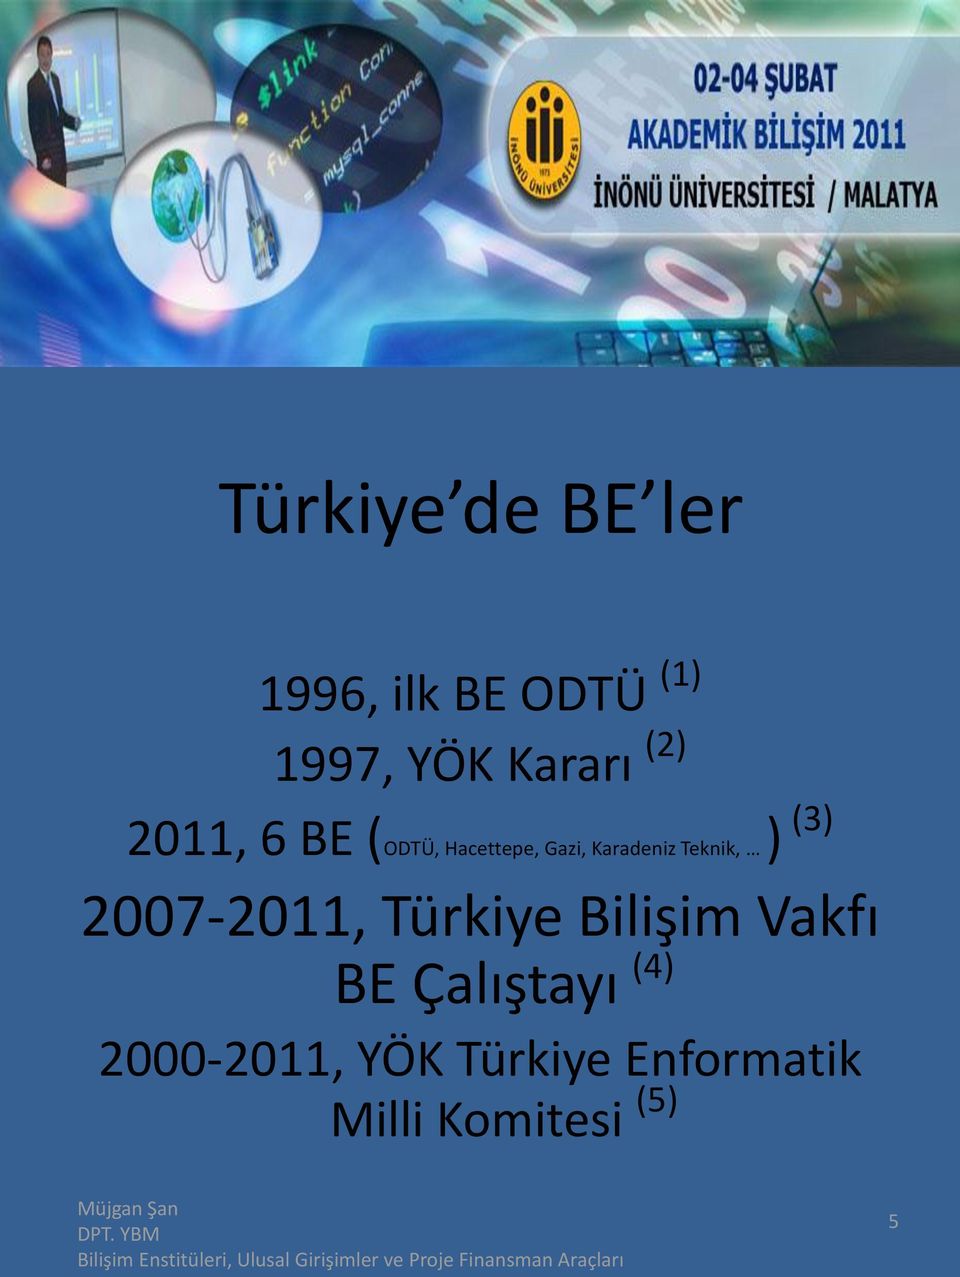 Teknik, ) (3) 2007-2011, Türkiye Bilişim Vakfı BE